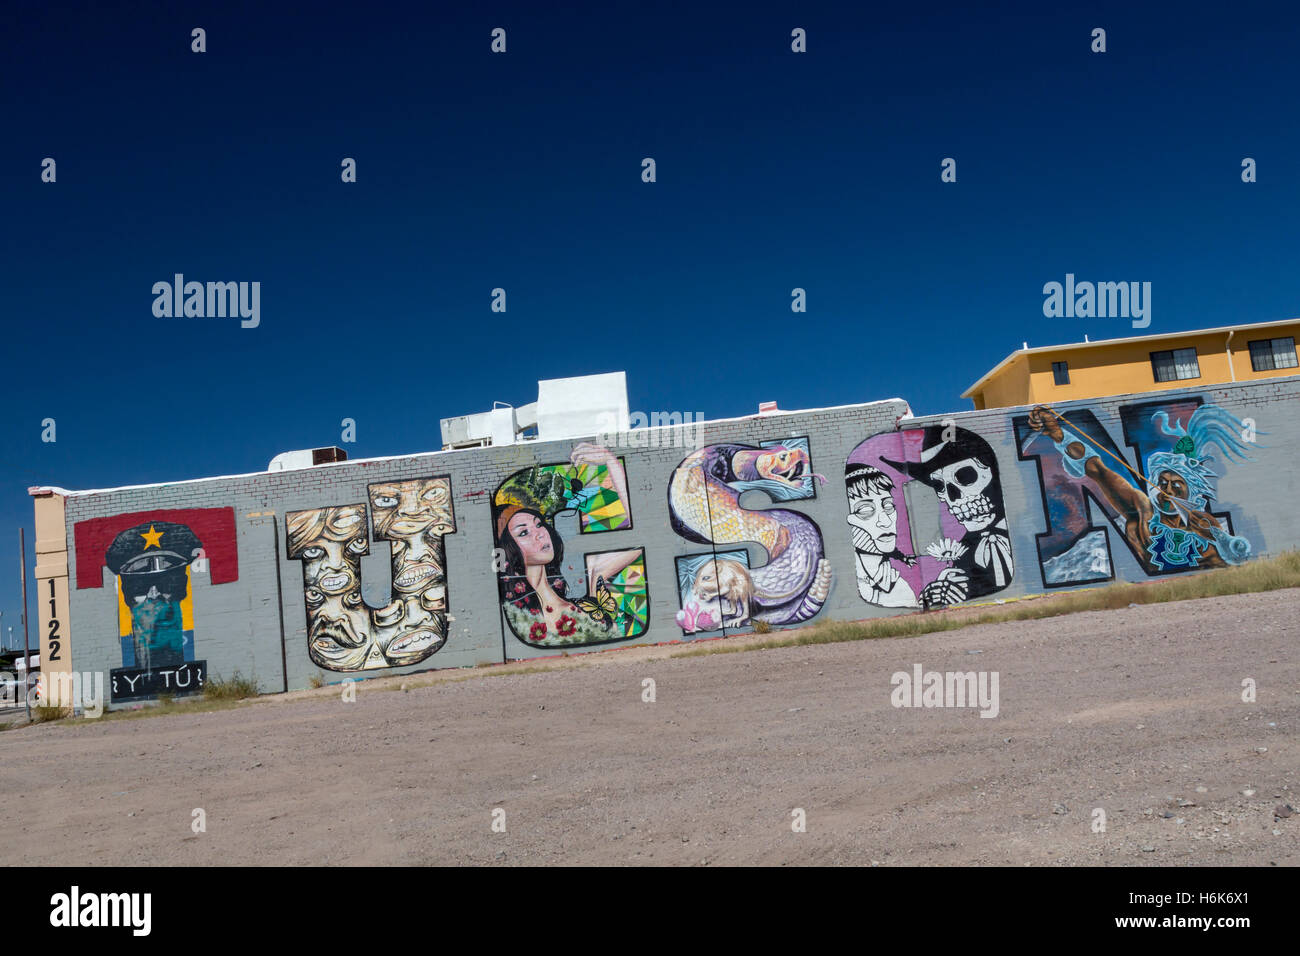 Tucson, Arizona - Une peinture précise le nom de la ville. Banque D'Images